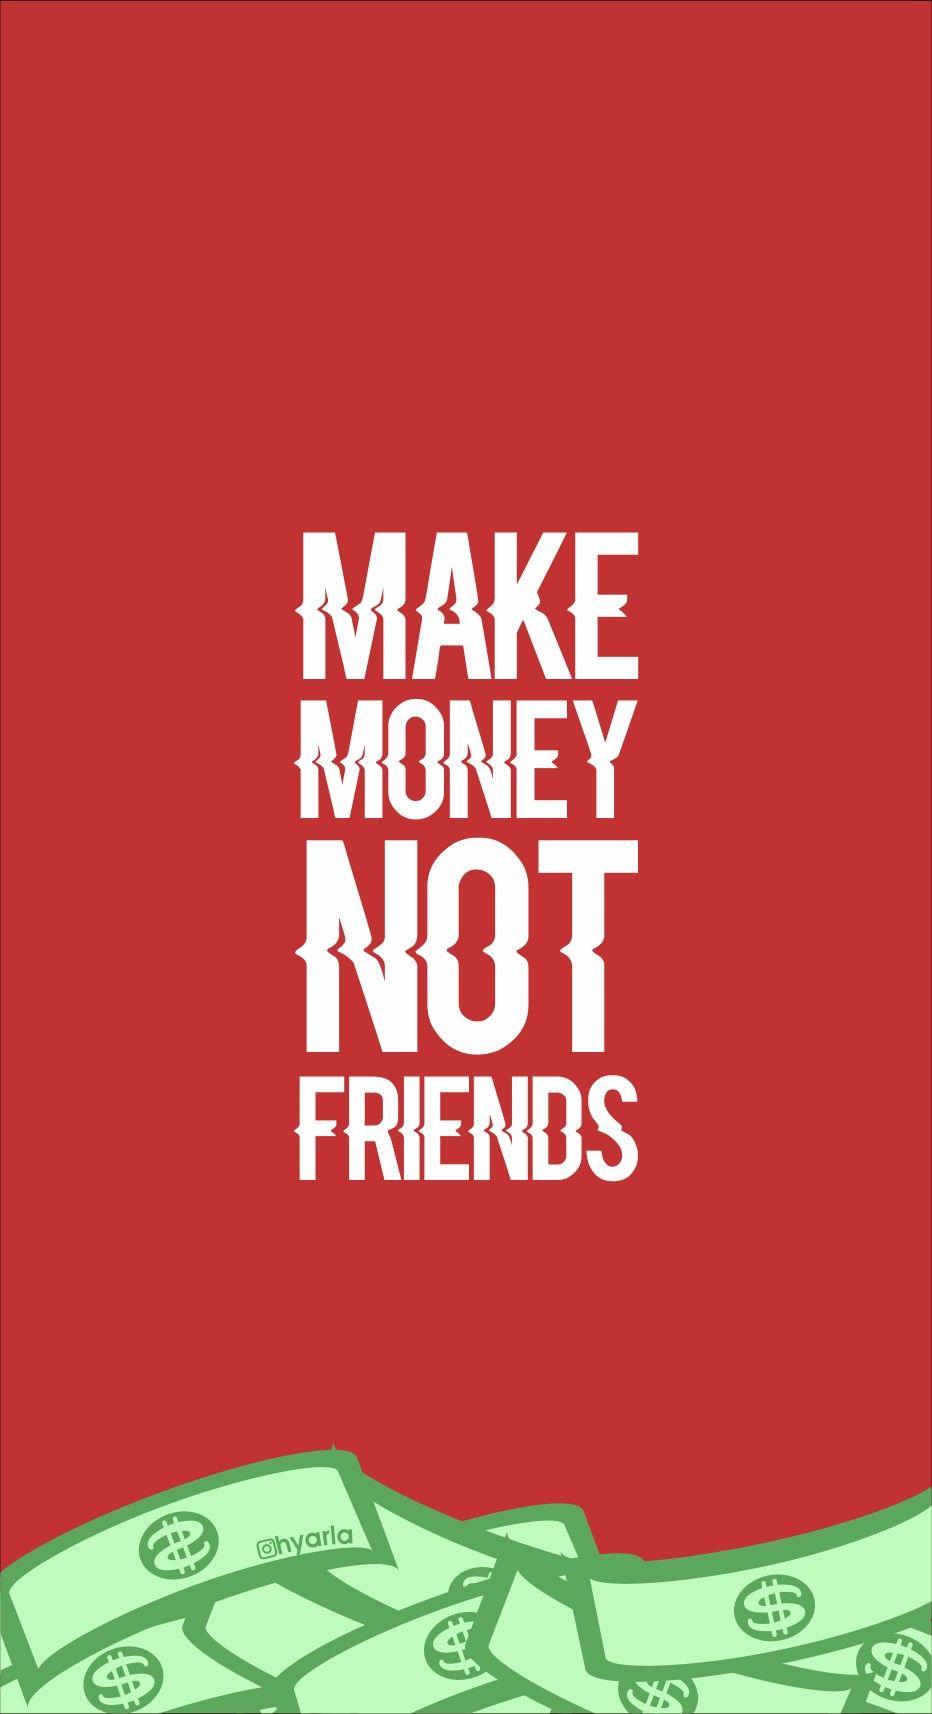 Wallpaper make money not friends. Money wallpaper iphone, Cool wallpaper for phones, Friends wallpaper